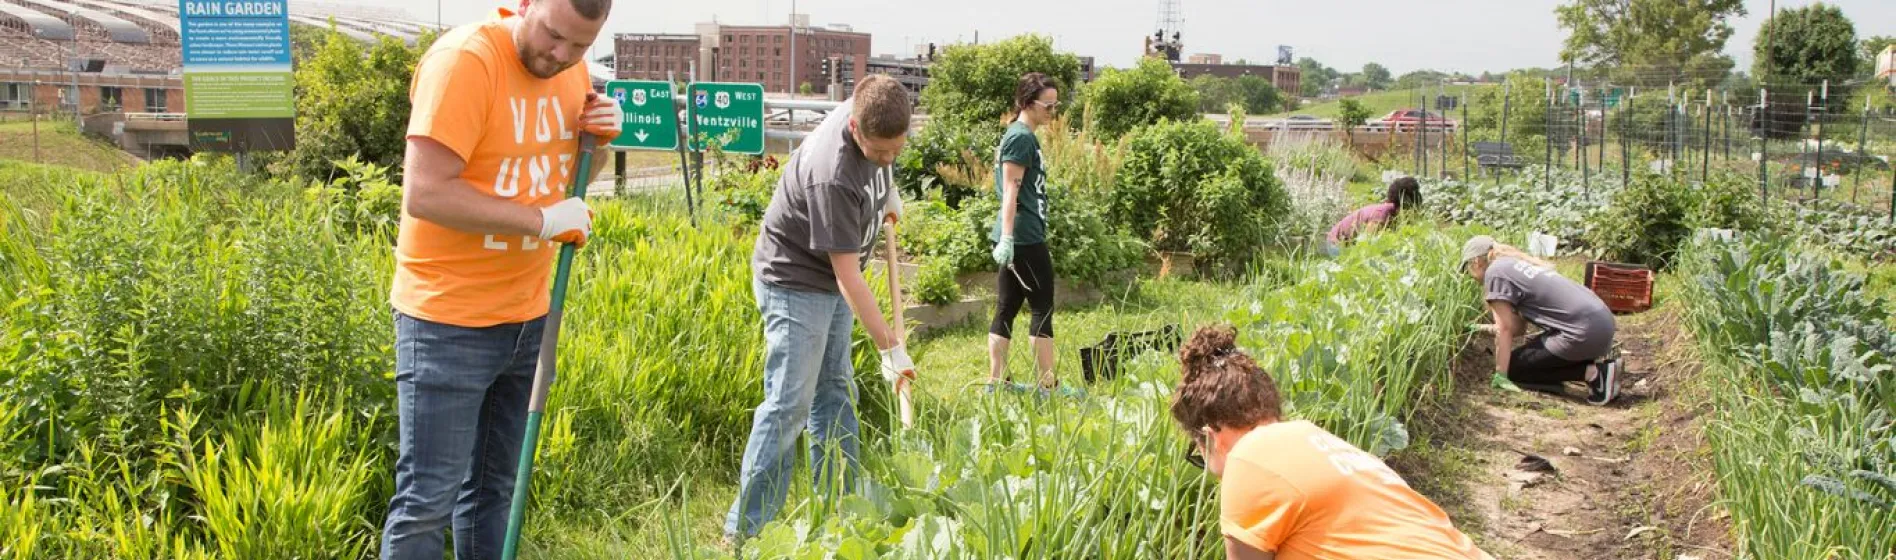 volunteers help in a community garden as part of NEEF Grant